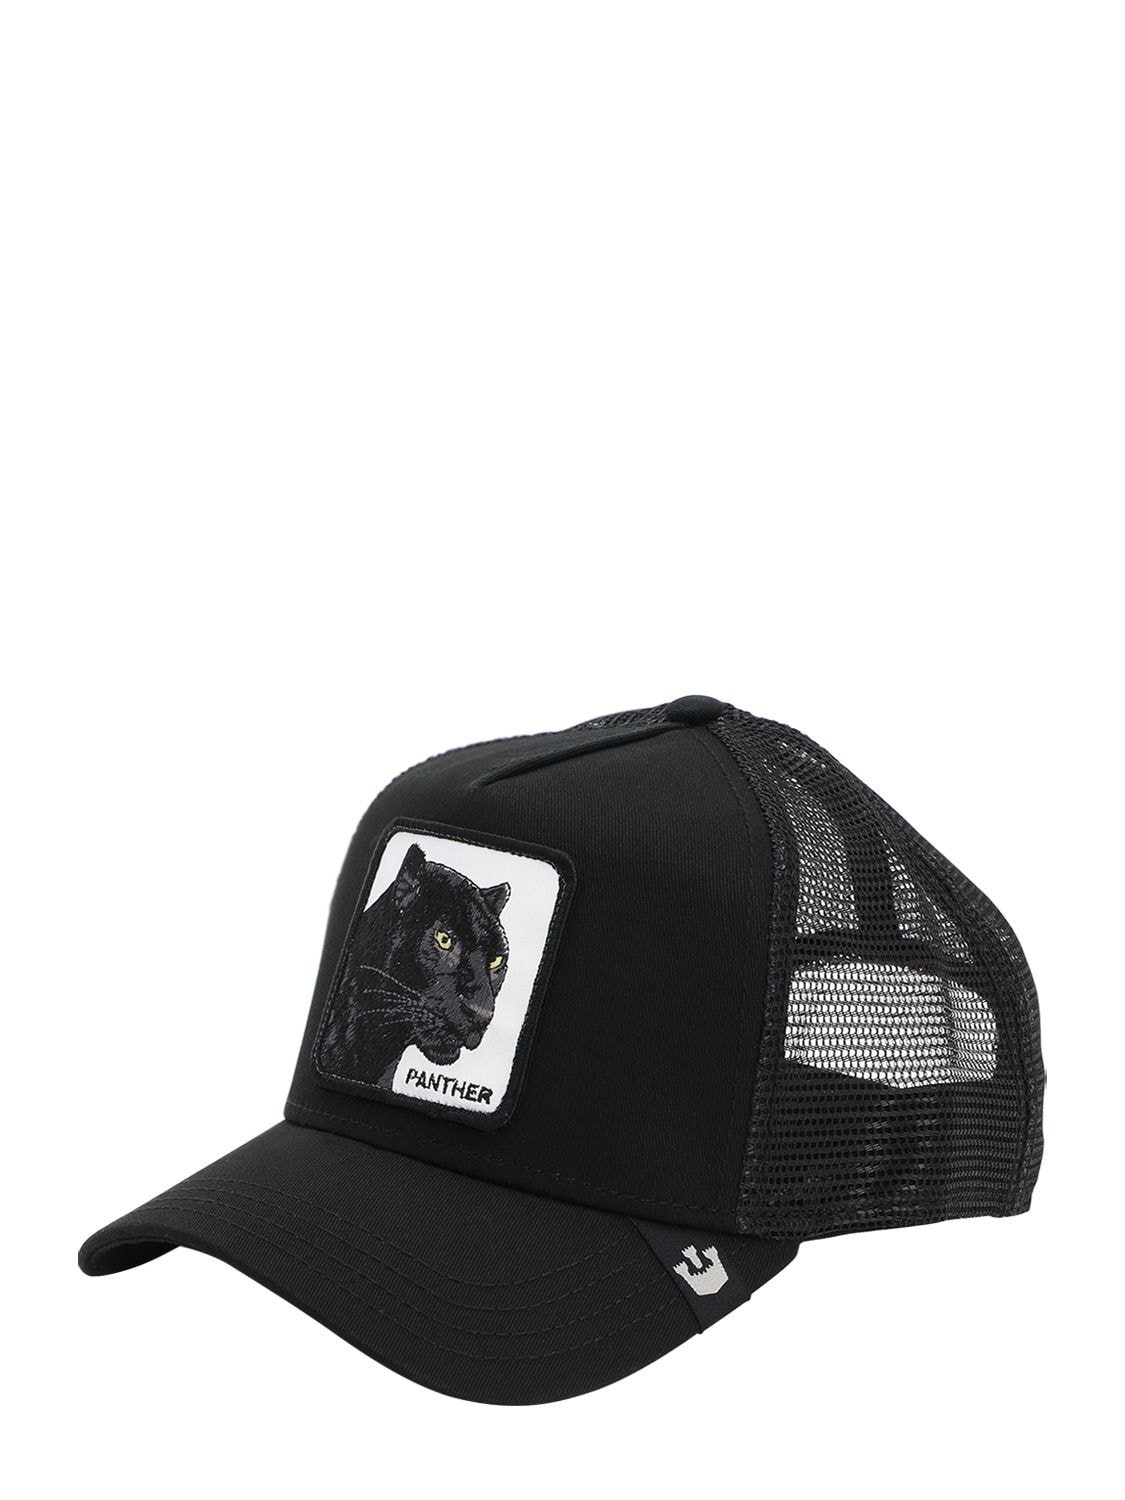 Goorin Bros Black Panther Trucker Hat W/ Patch